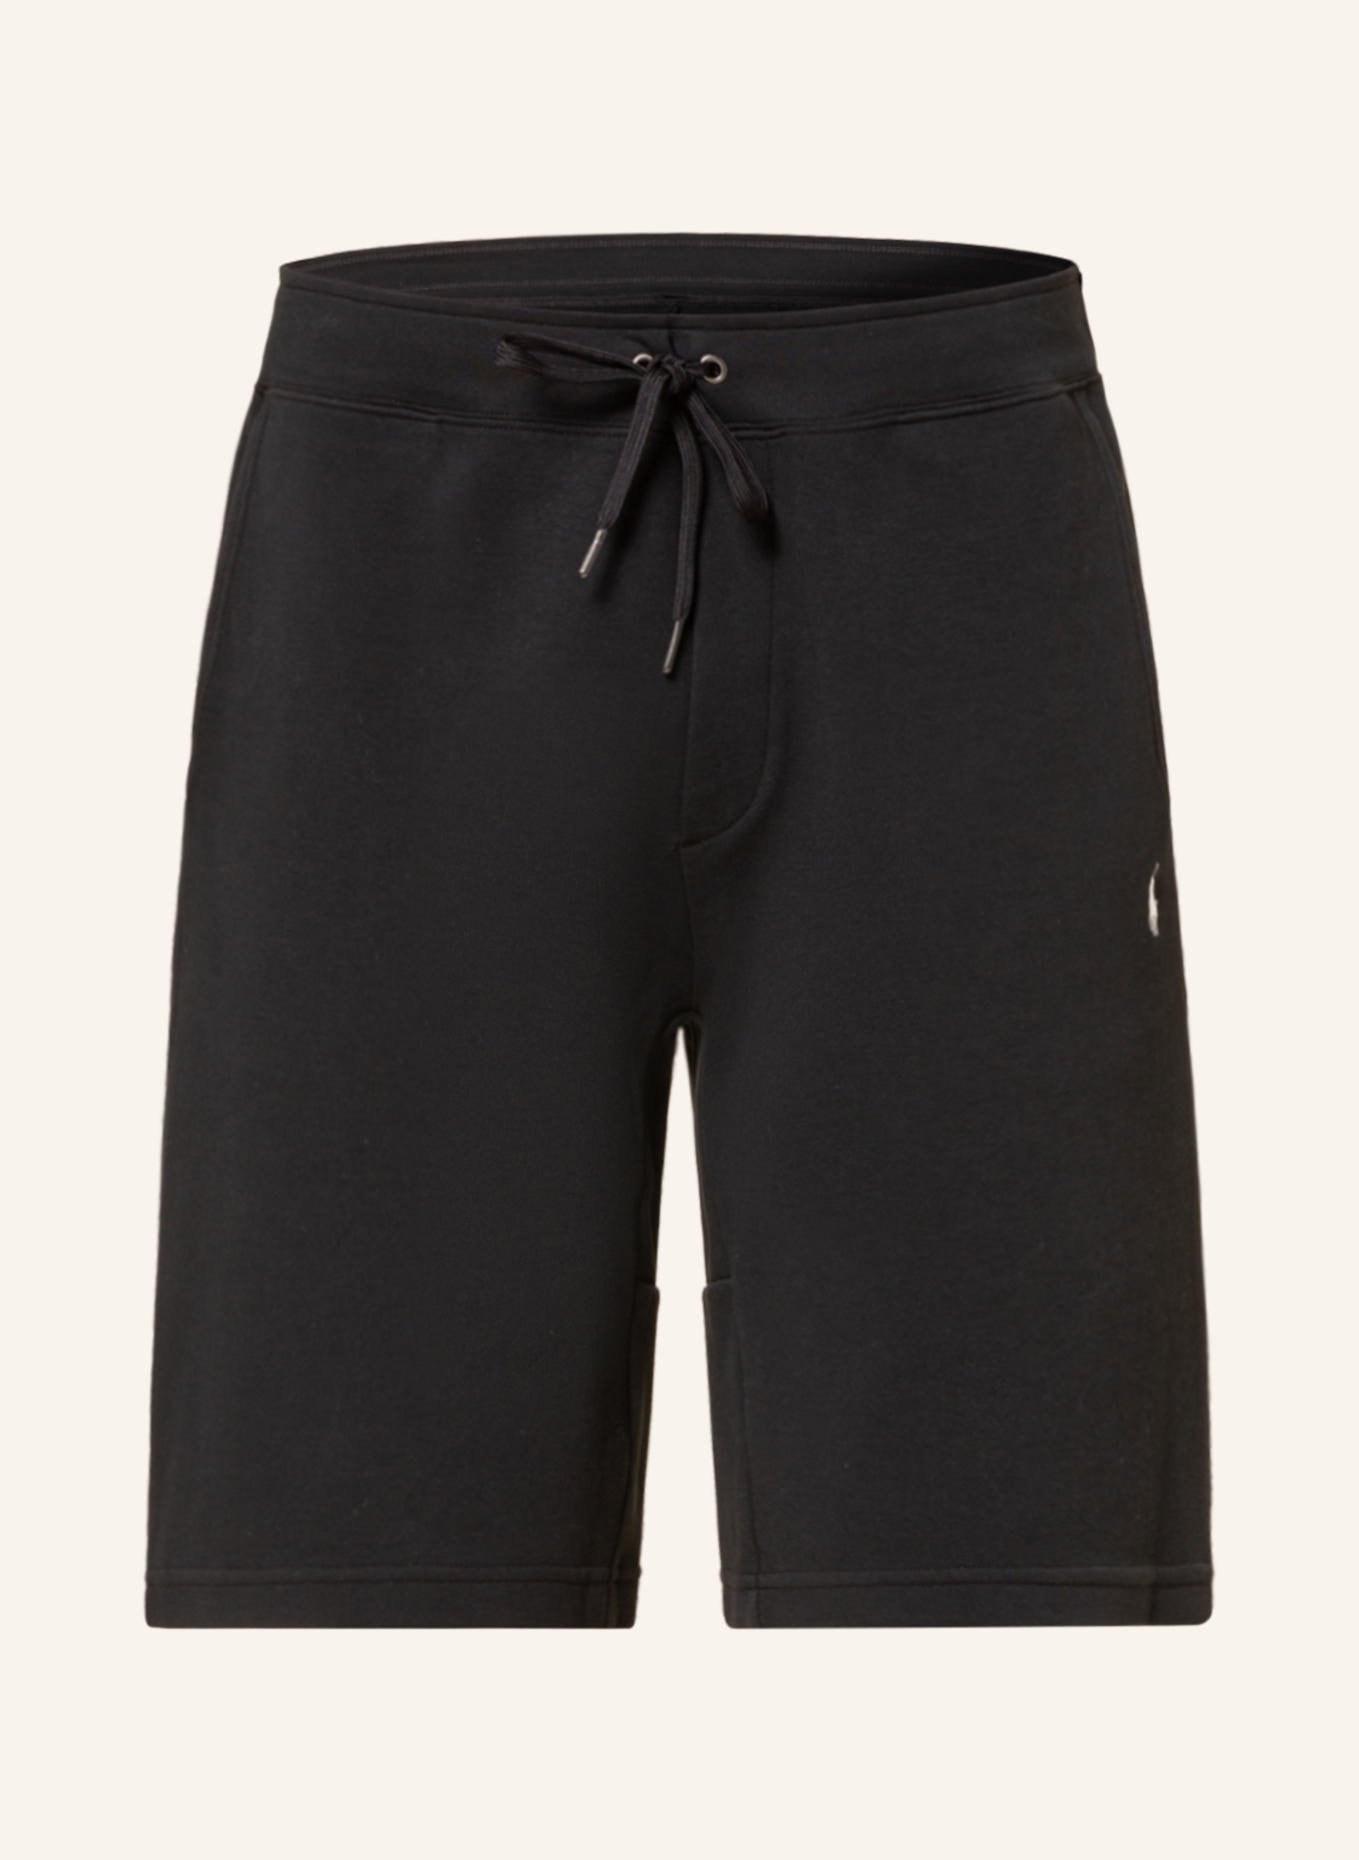 POLO RALPH LAUREN Sweat shorts, Color: BLACK (Image 1)